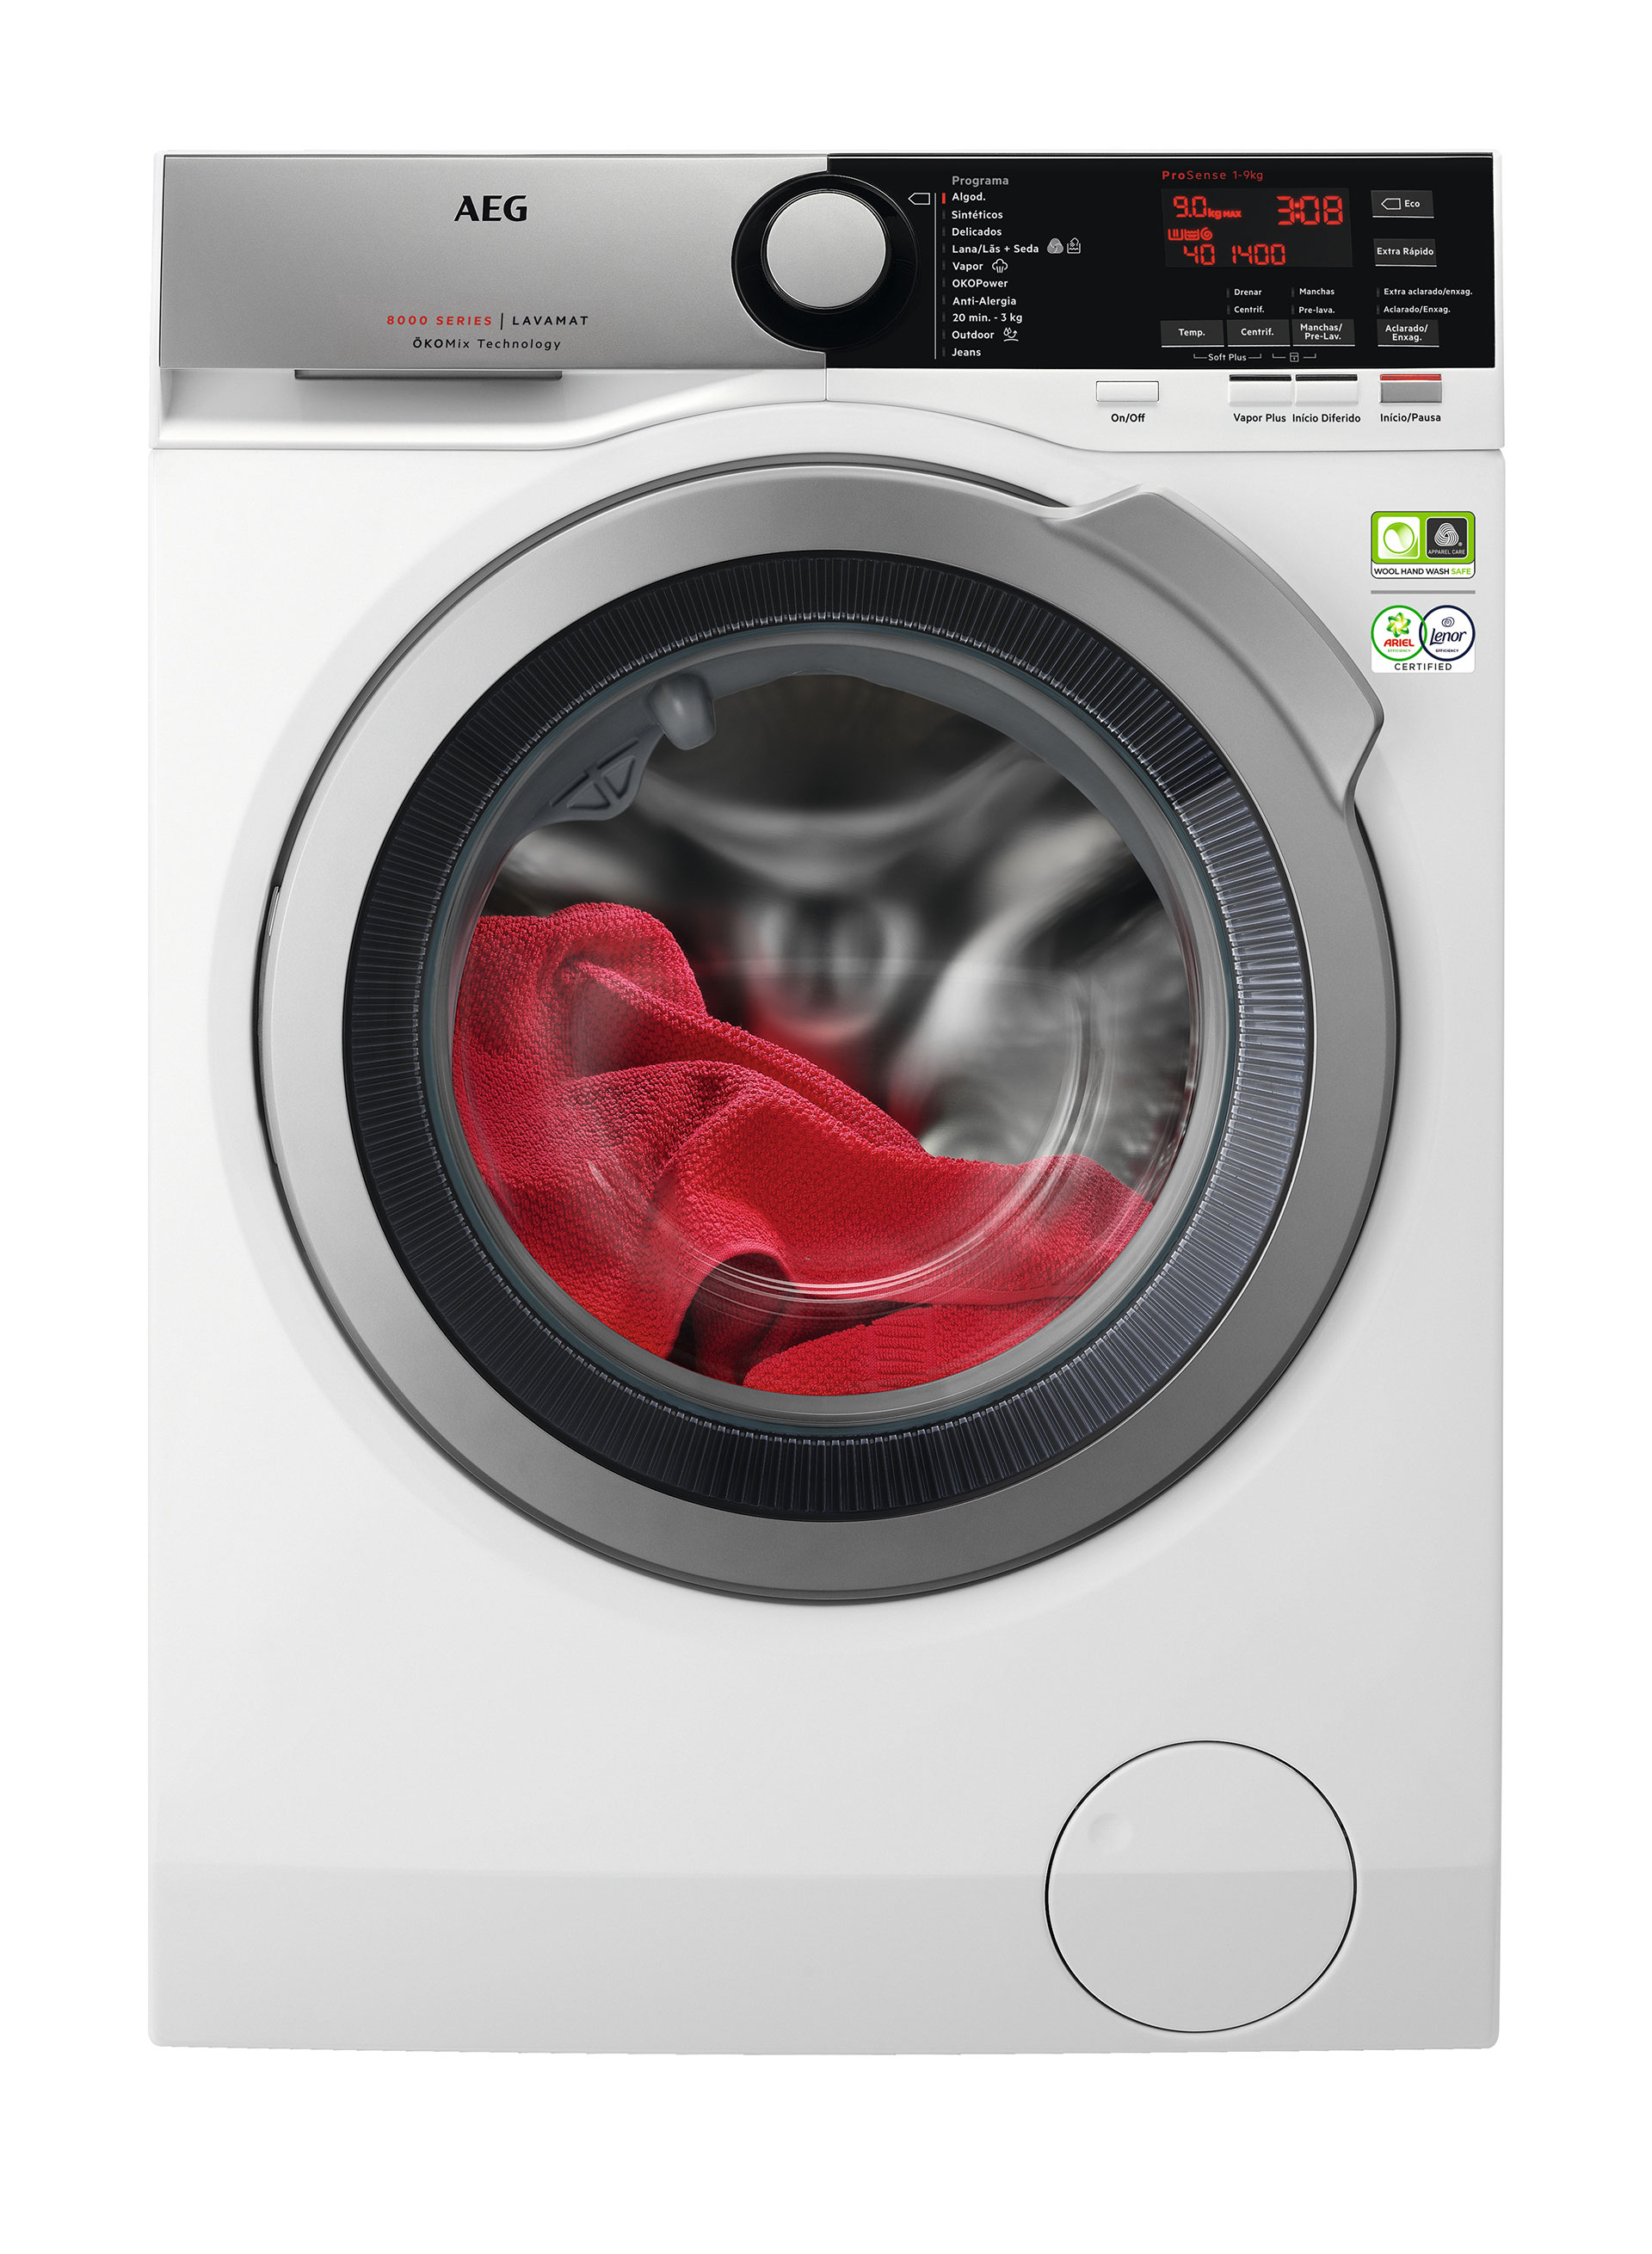 Máquina de lavar e secar roupa AEG - Eletrodomésticos com garantia de qualidade EDP